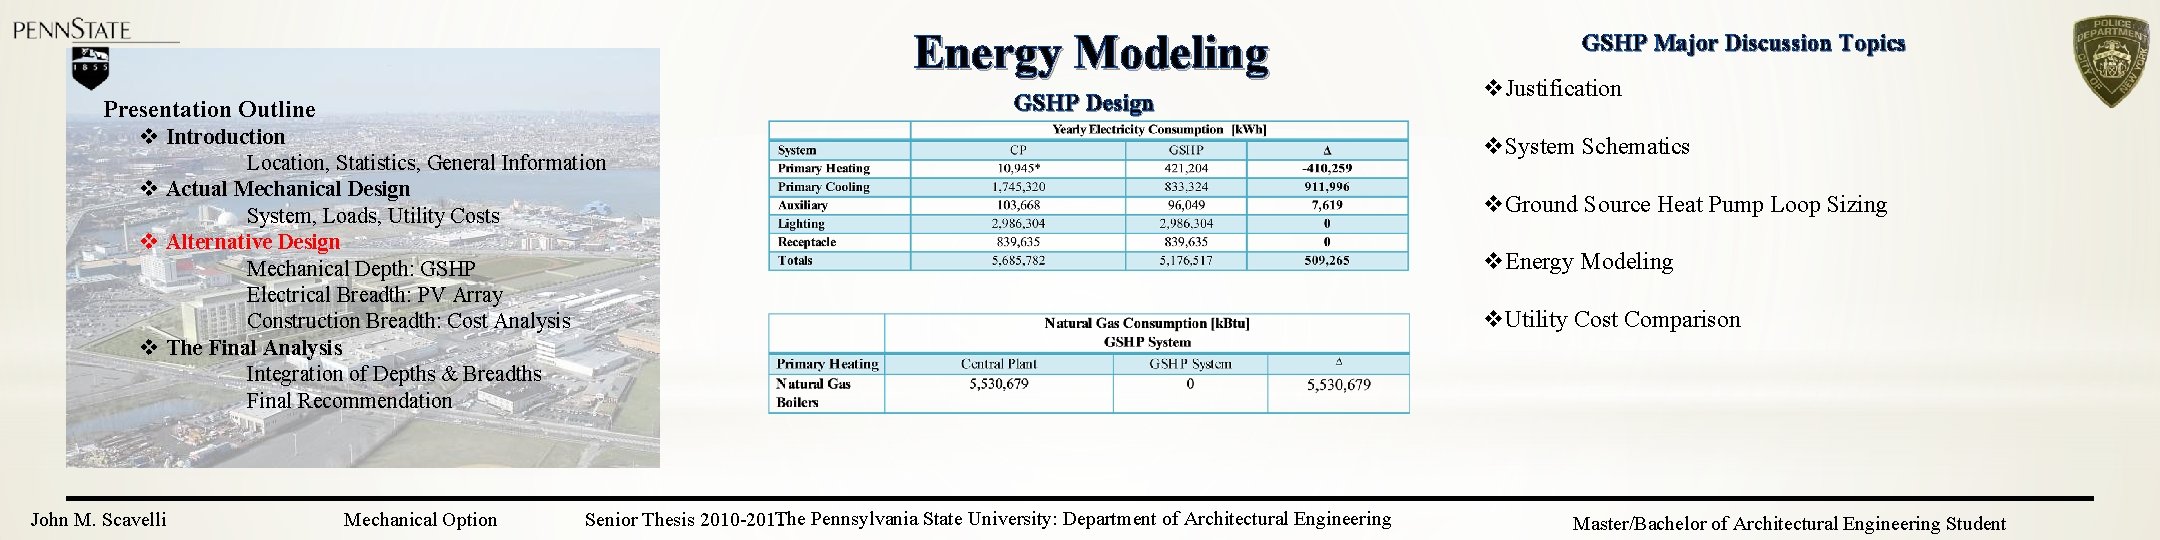 Energy Modeling GSHP Design Presentation Outline v Introduction Location, Statistics, General Information v Actual